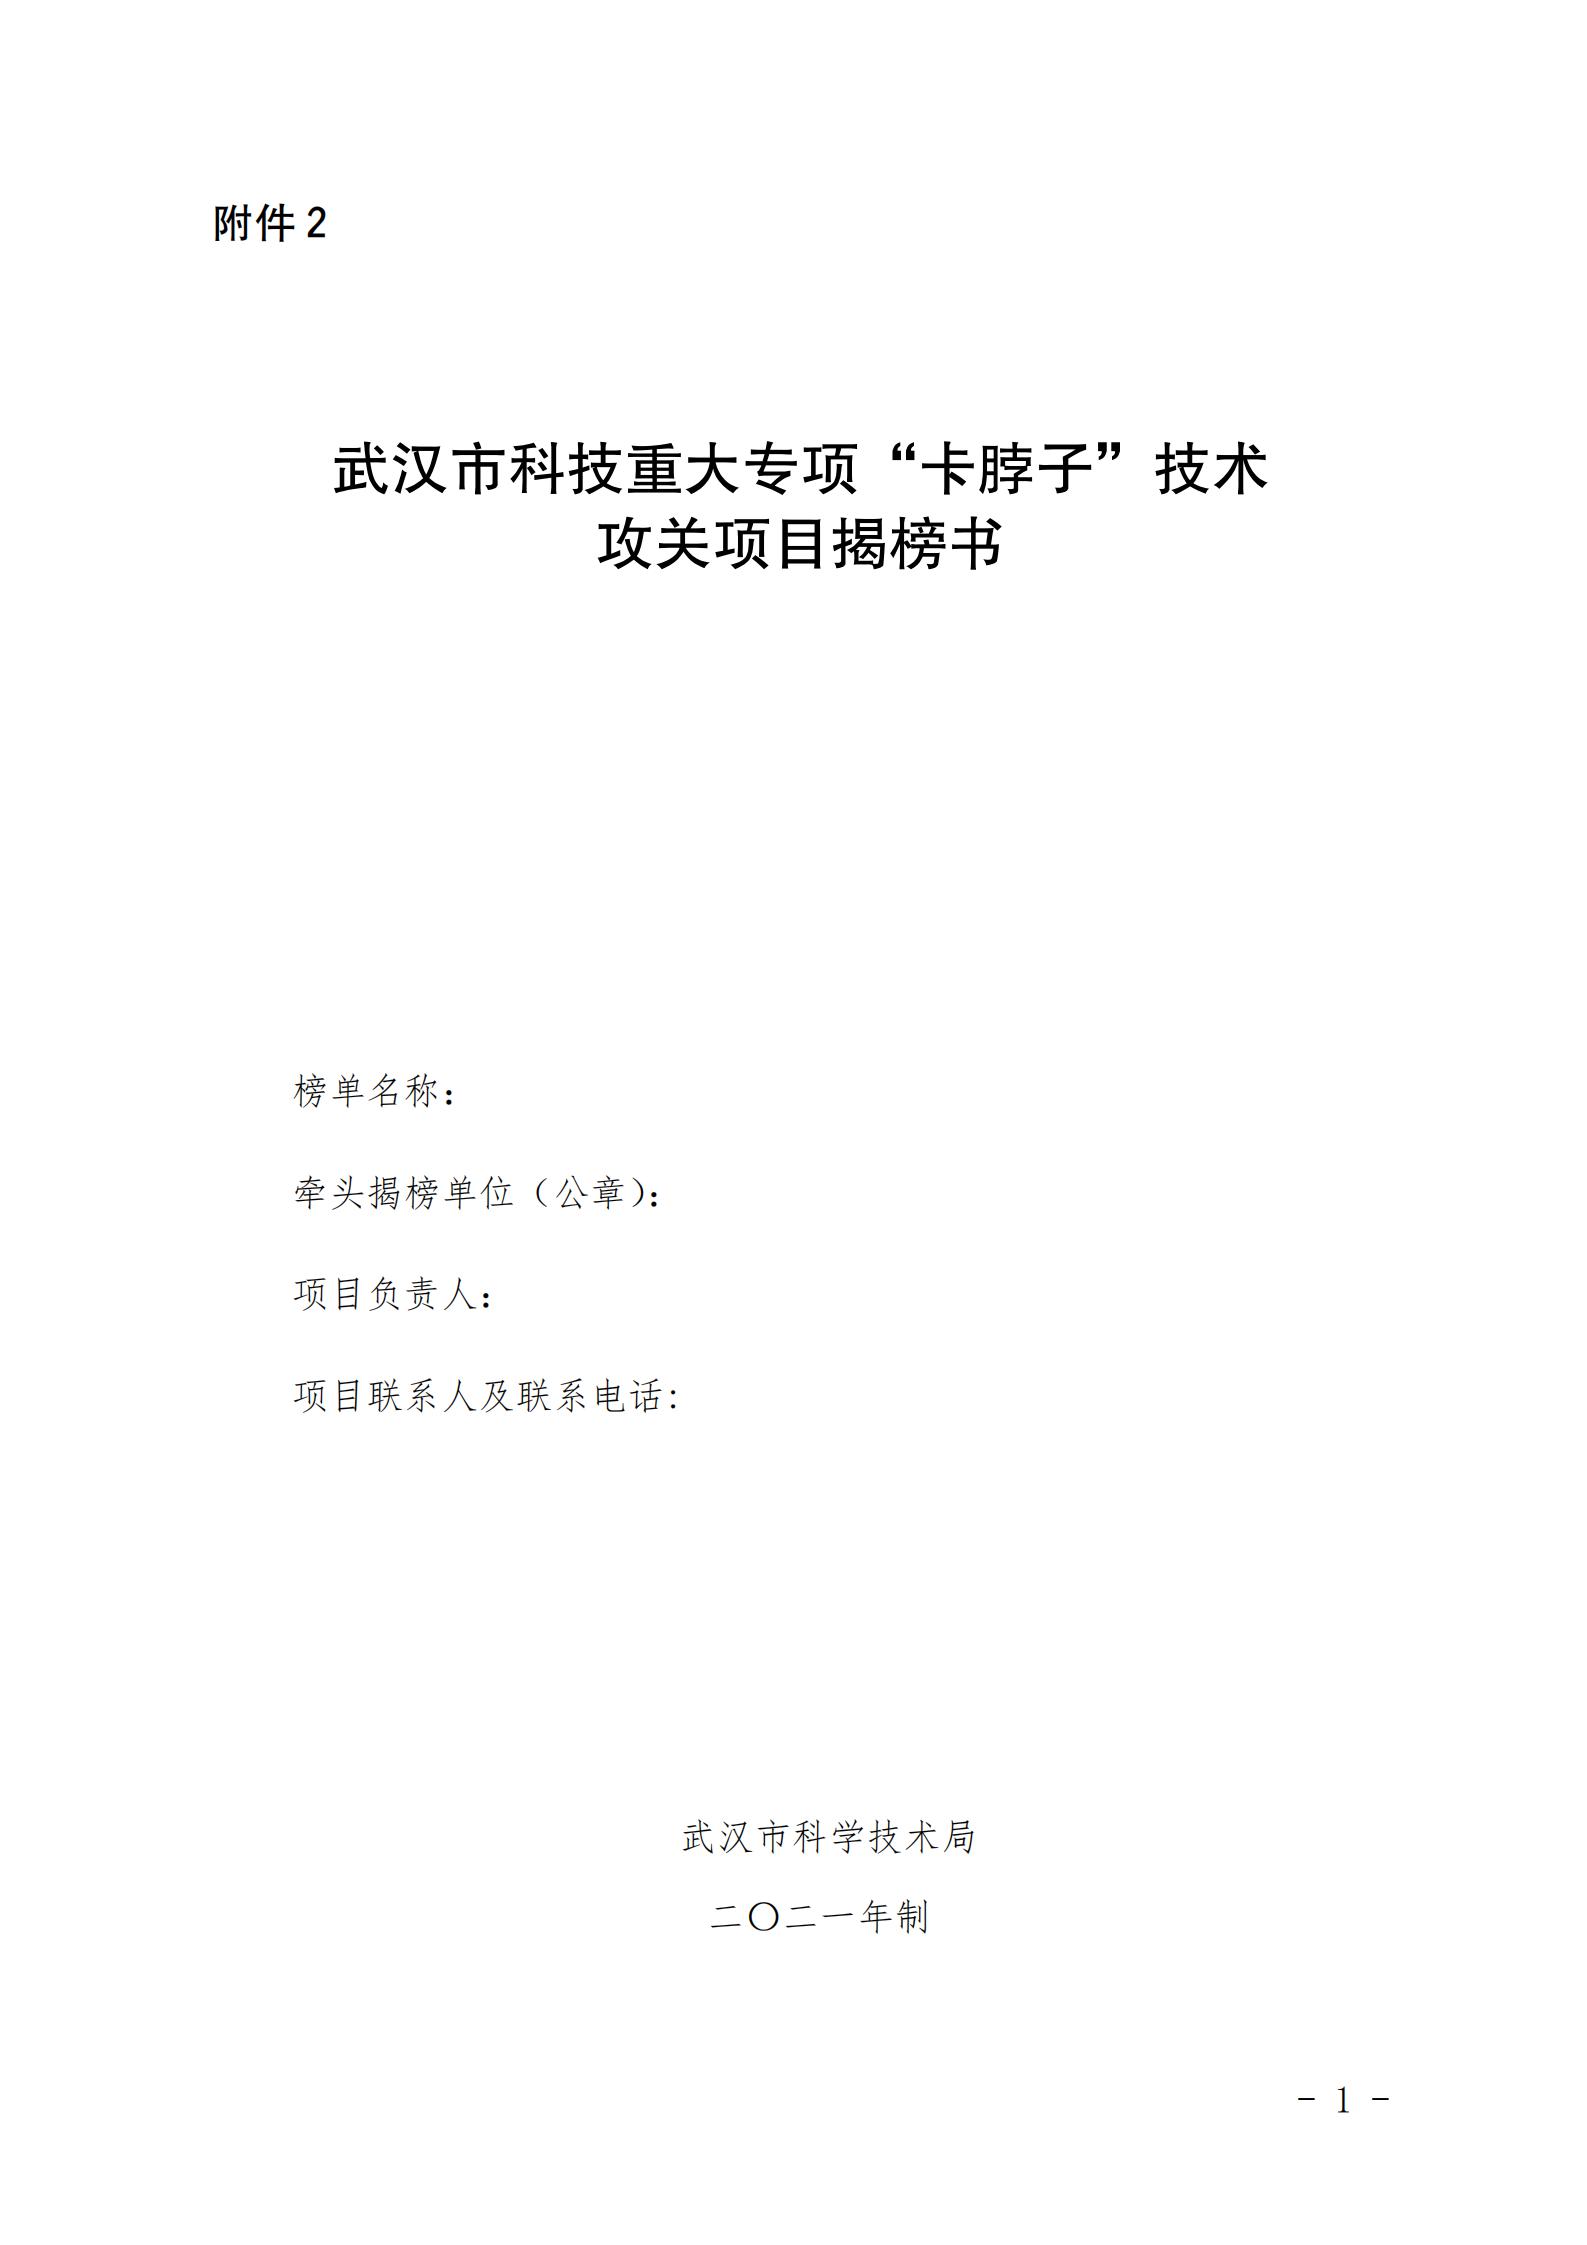 武汉市科技重大专项“卡脖子”技术攻关项目揭榜书.docx_00.jpg